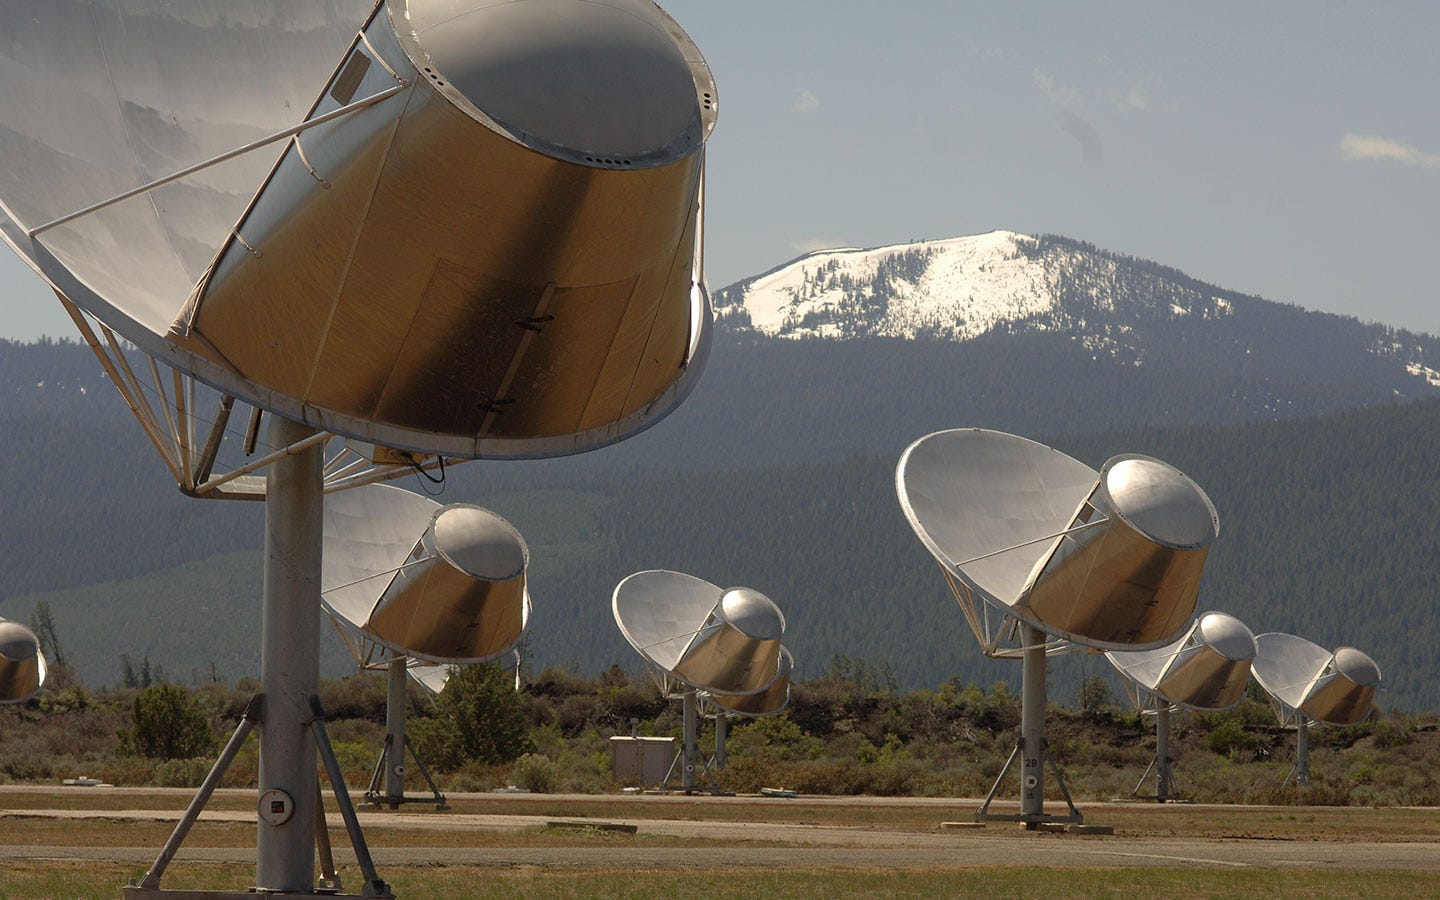 Radioteleskopschüsseln zeigten in einem offenen Feld mit schneebedeckten Bergen im Hintergrund auf den Himmel